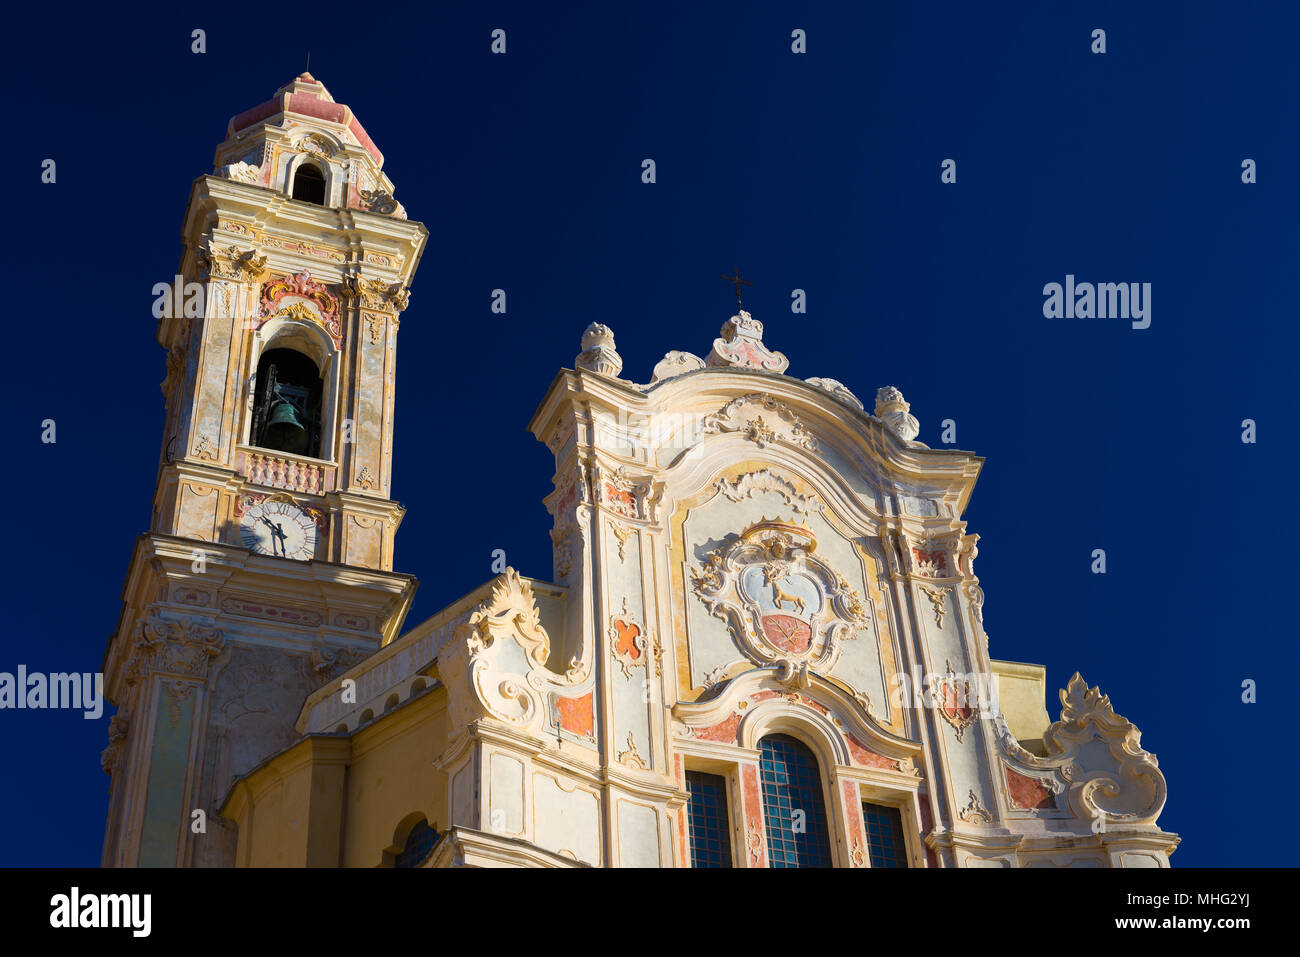 La città vecchia di Cervo, Liguria, Italia, con la bella chiesa barocca di San Giovanni Battista (San Giovanni Batista). Cielo blu chiaro, polarizzatore FEP Foto Stock